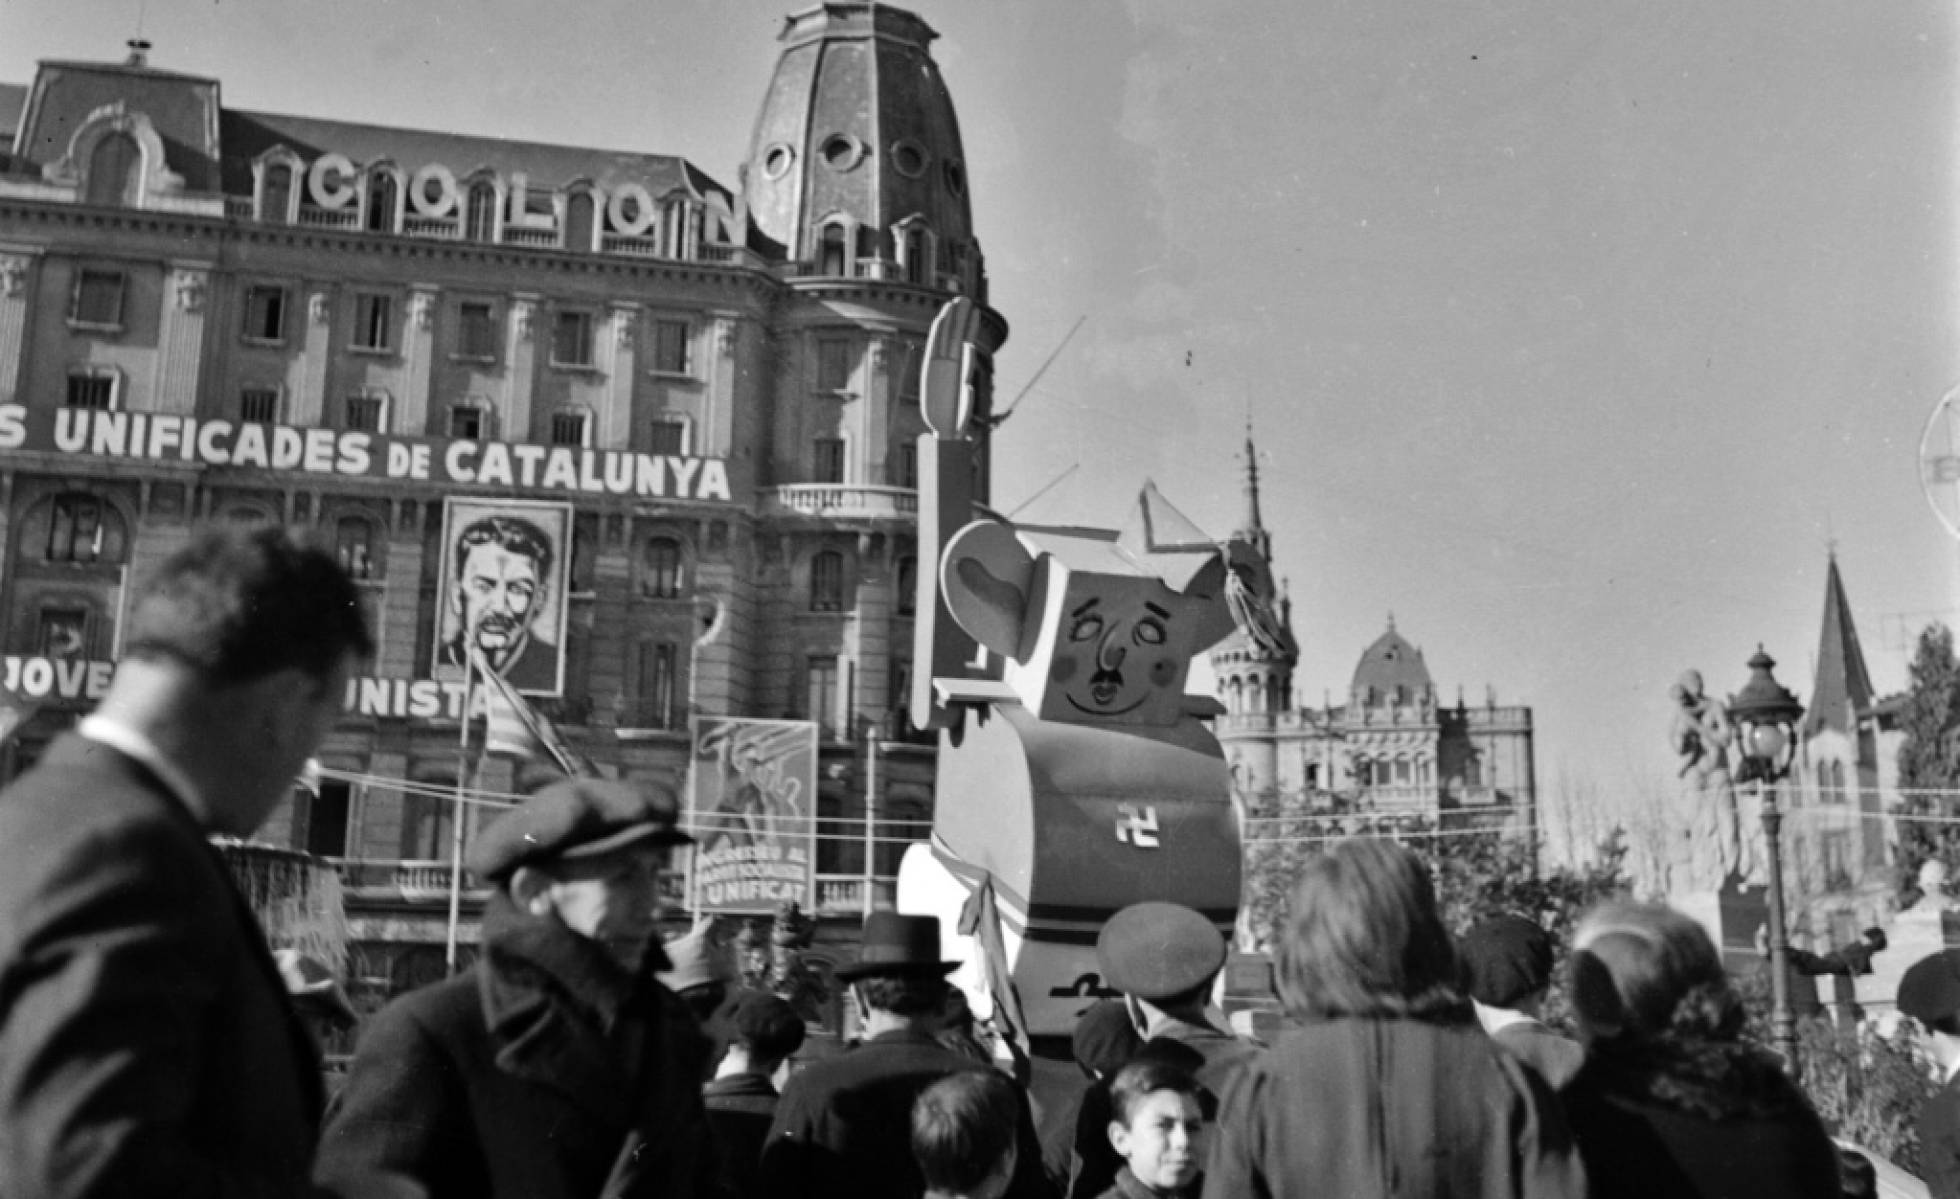 Hallan archivo de fotos de la guerra civil. Barcelona llena de retratos comunistas